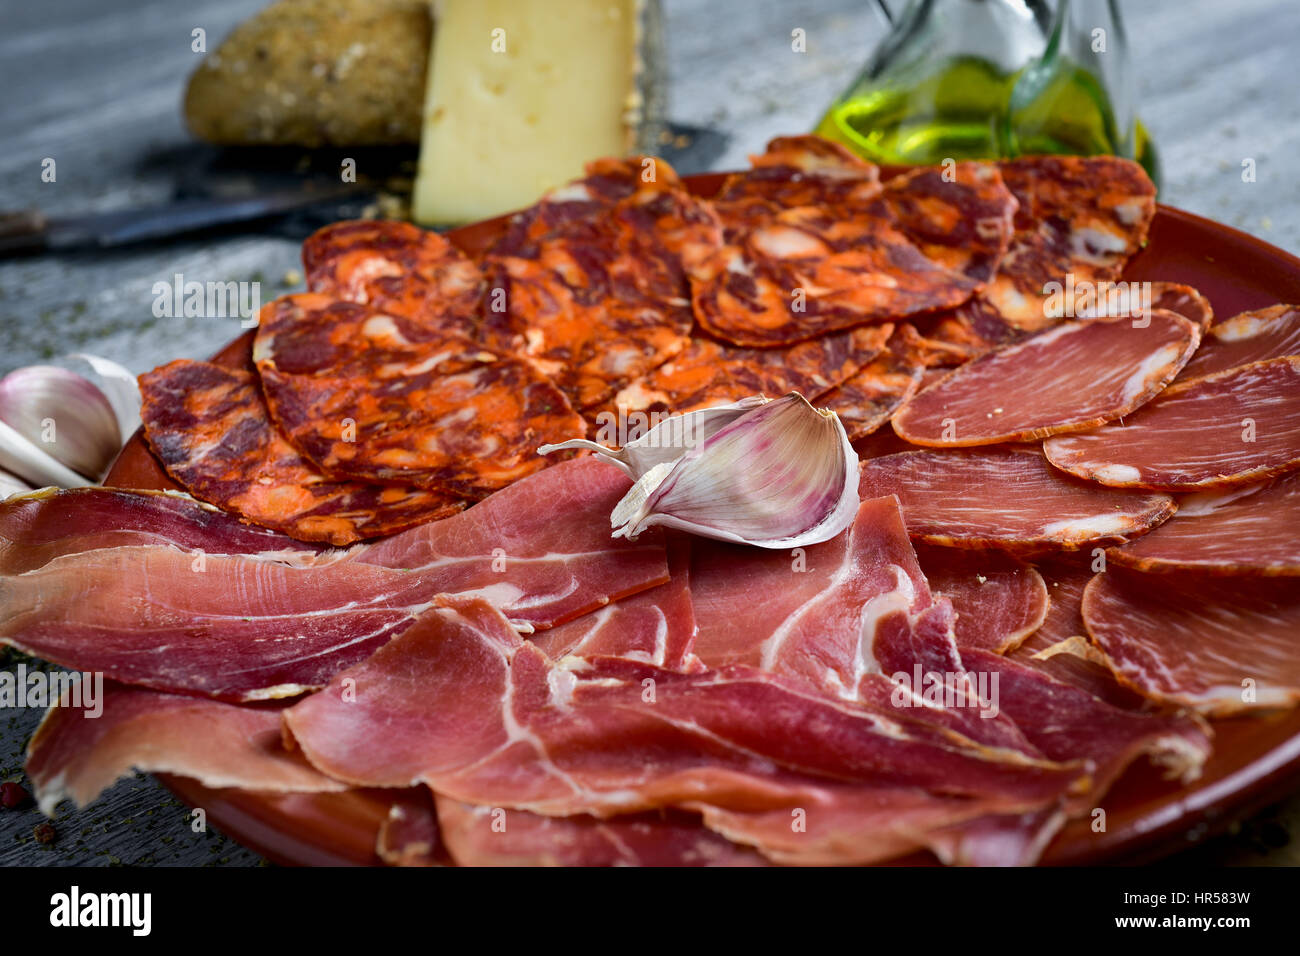 Une assiette avec un assortiment de charcuterie espagnole différentes comme  le filet de porc séché, chorizo et jambon serrano, et un morceau de fromage  manchego, un pain Photo Stock - Alamy